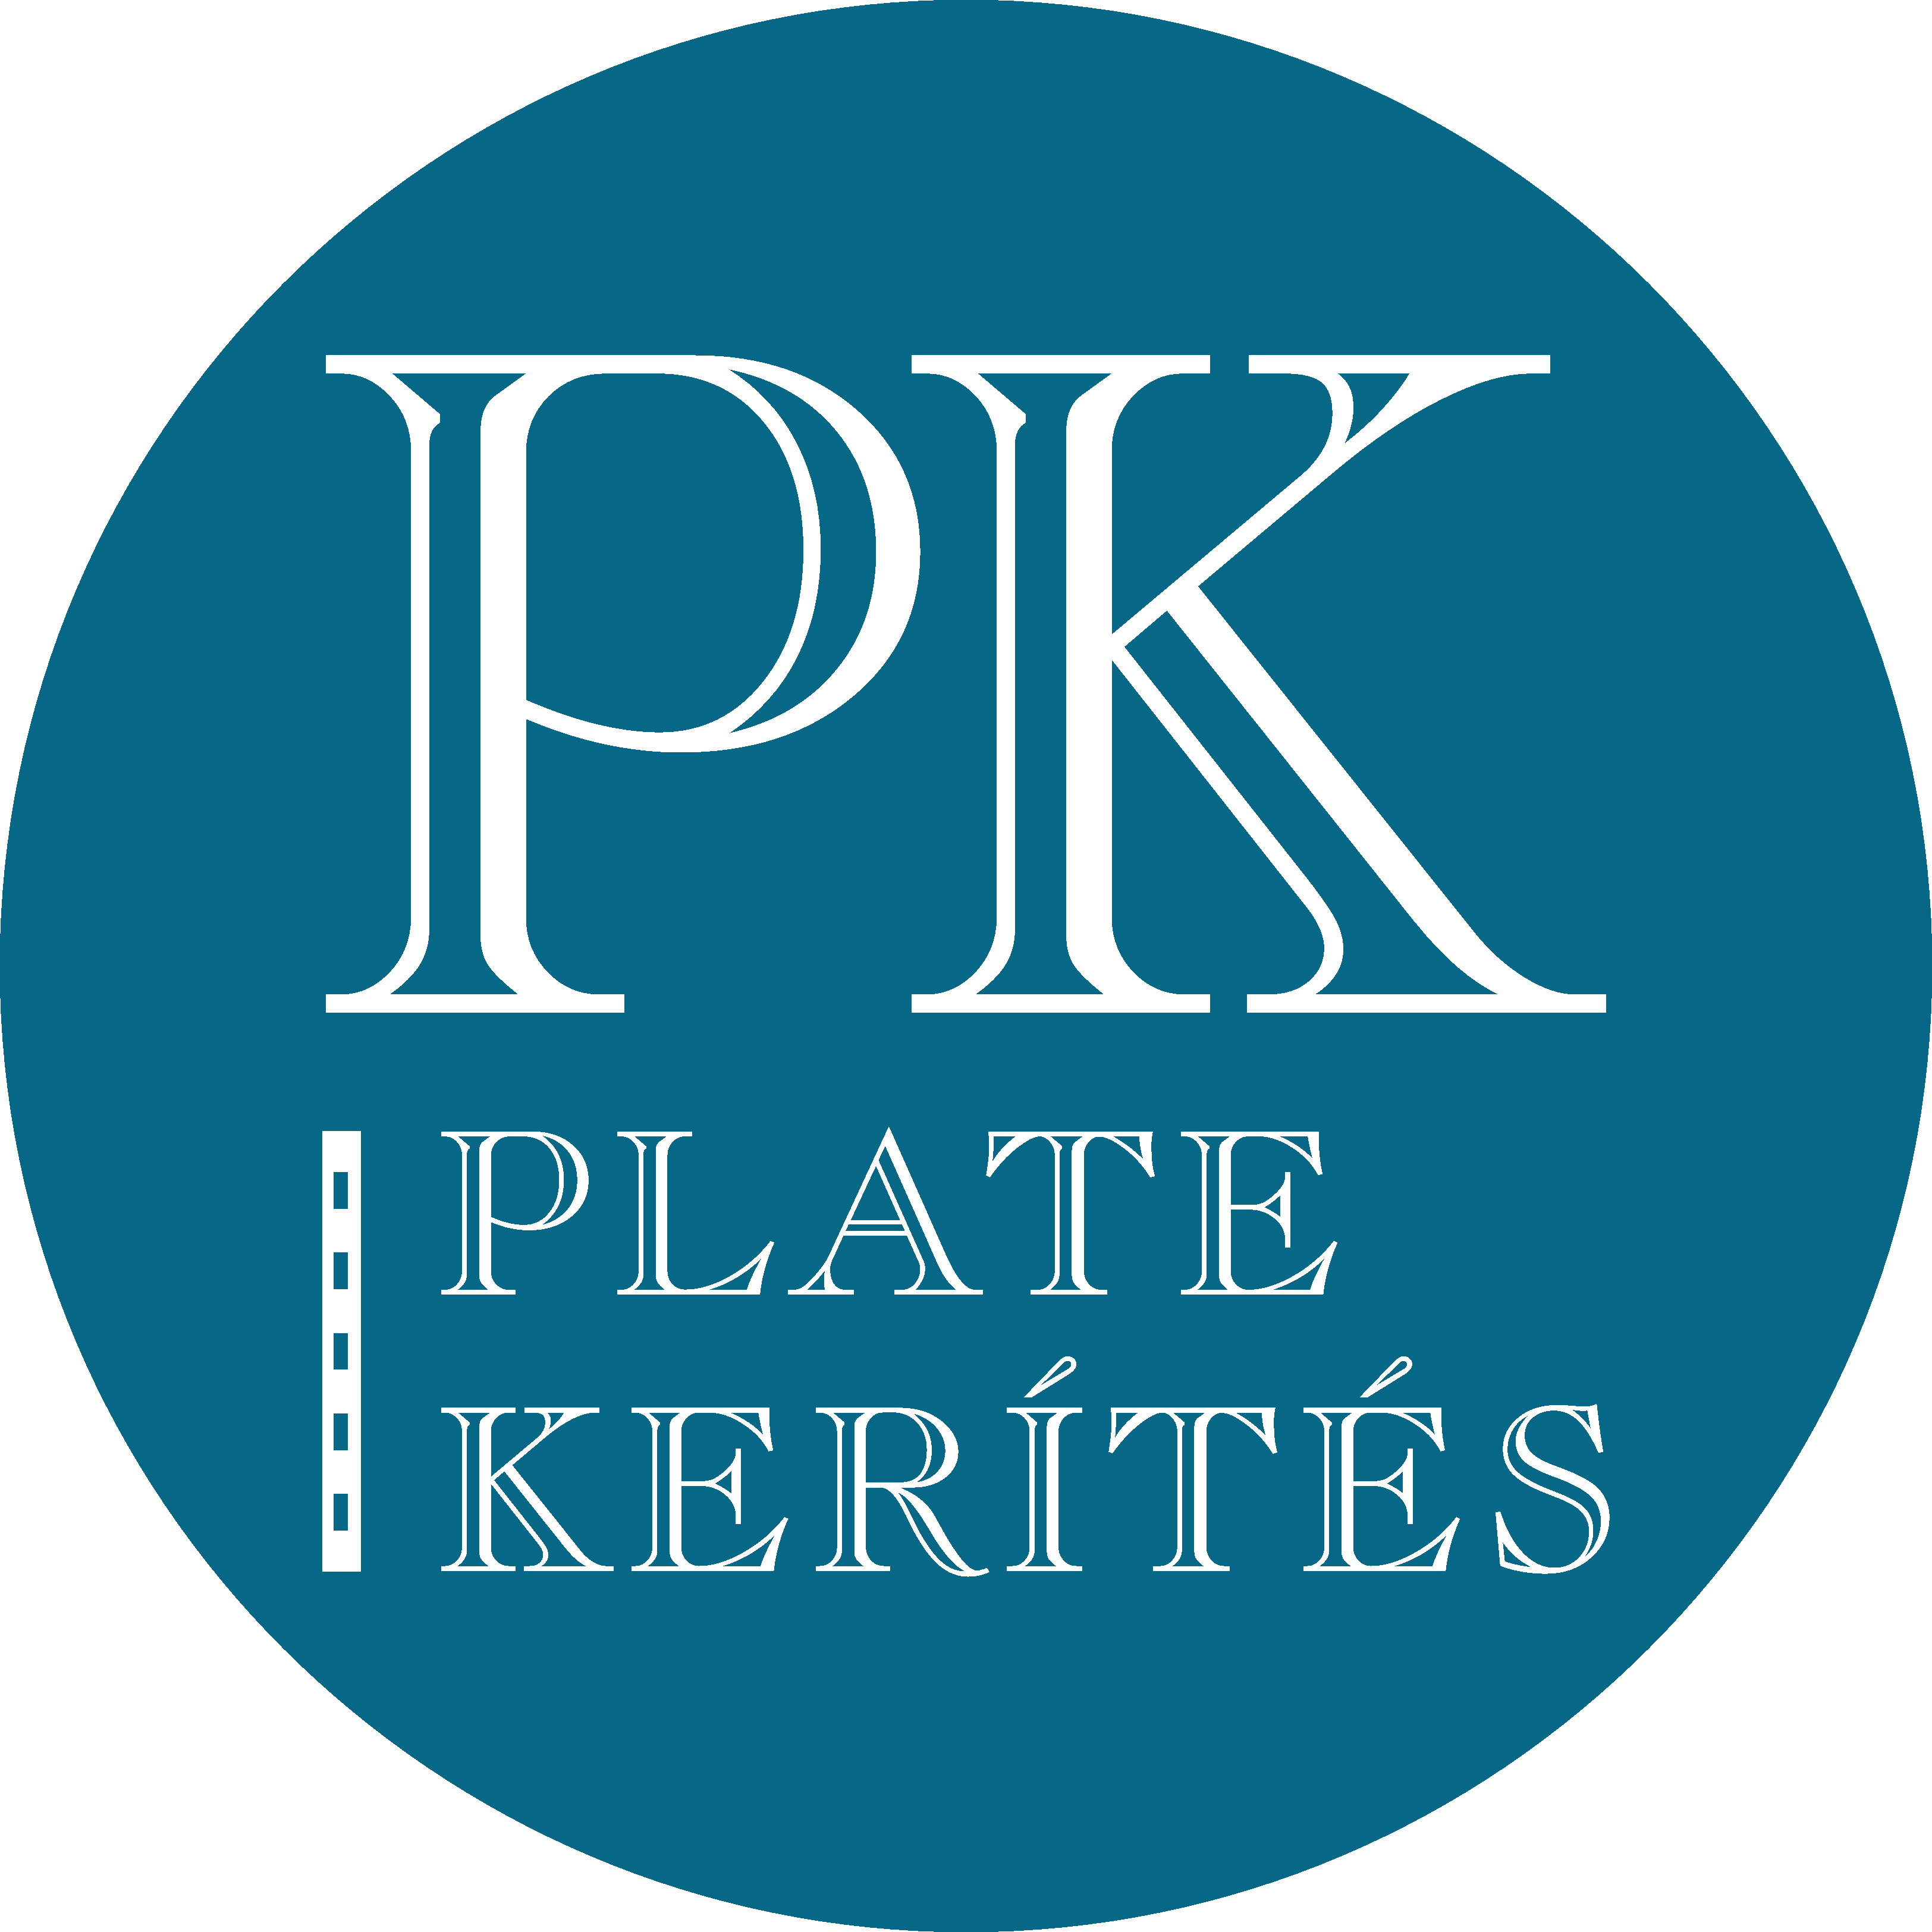 Plate-Kerítés Kft